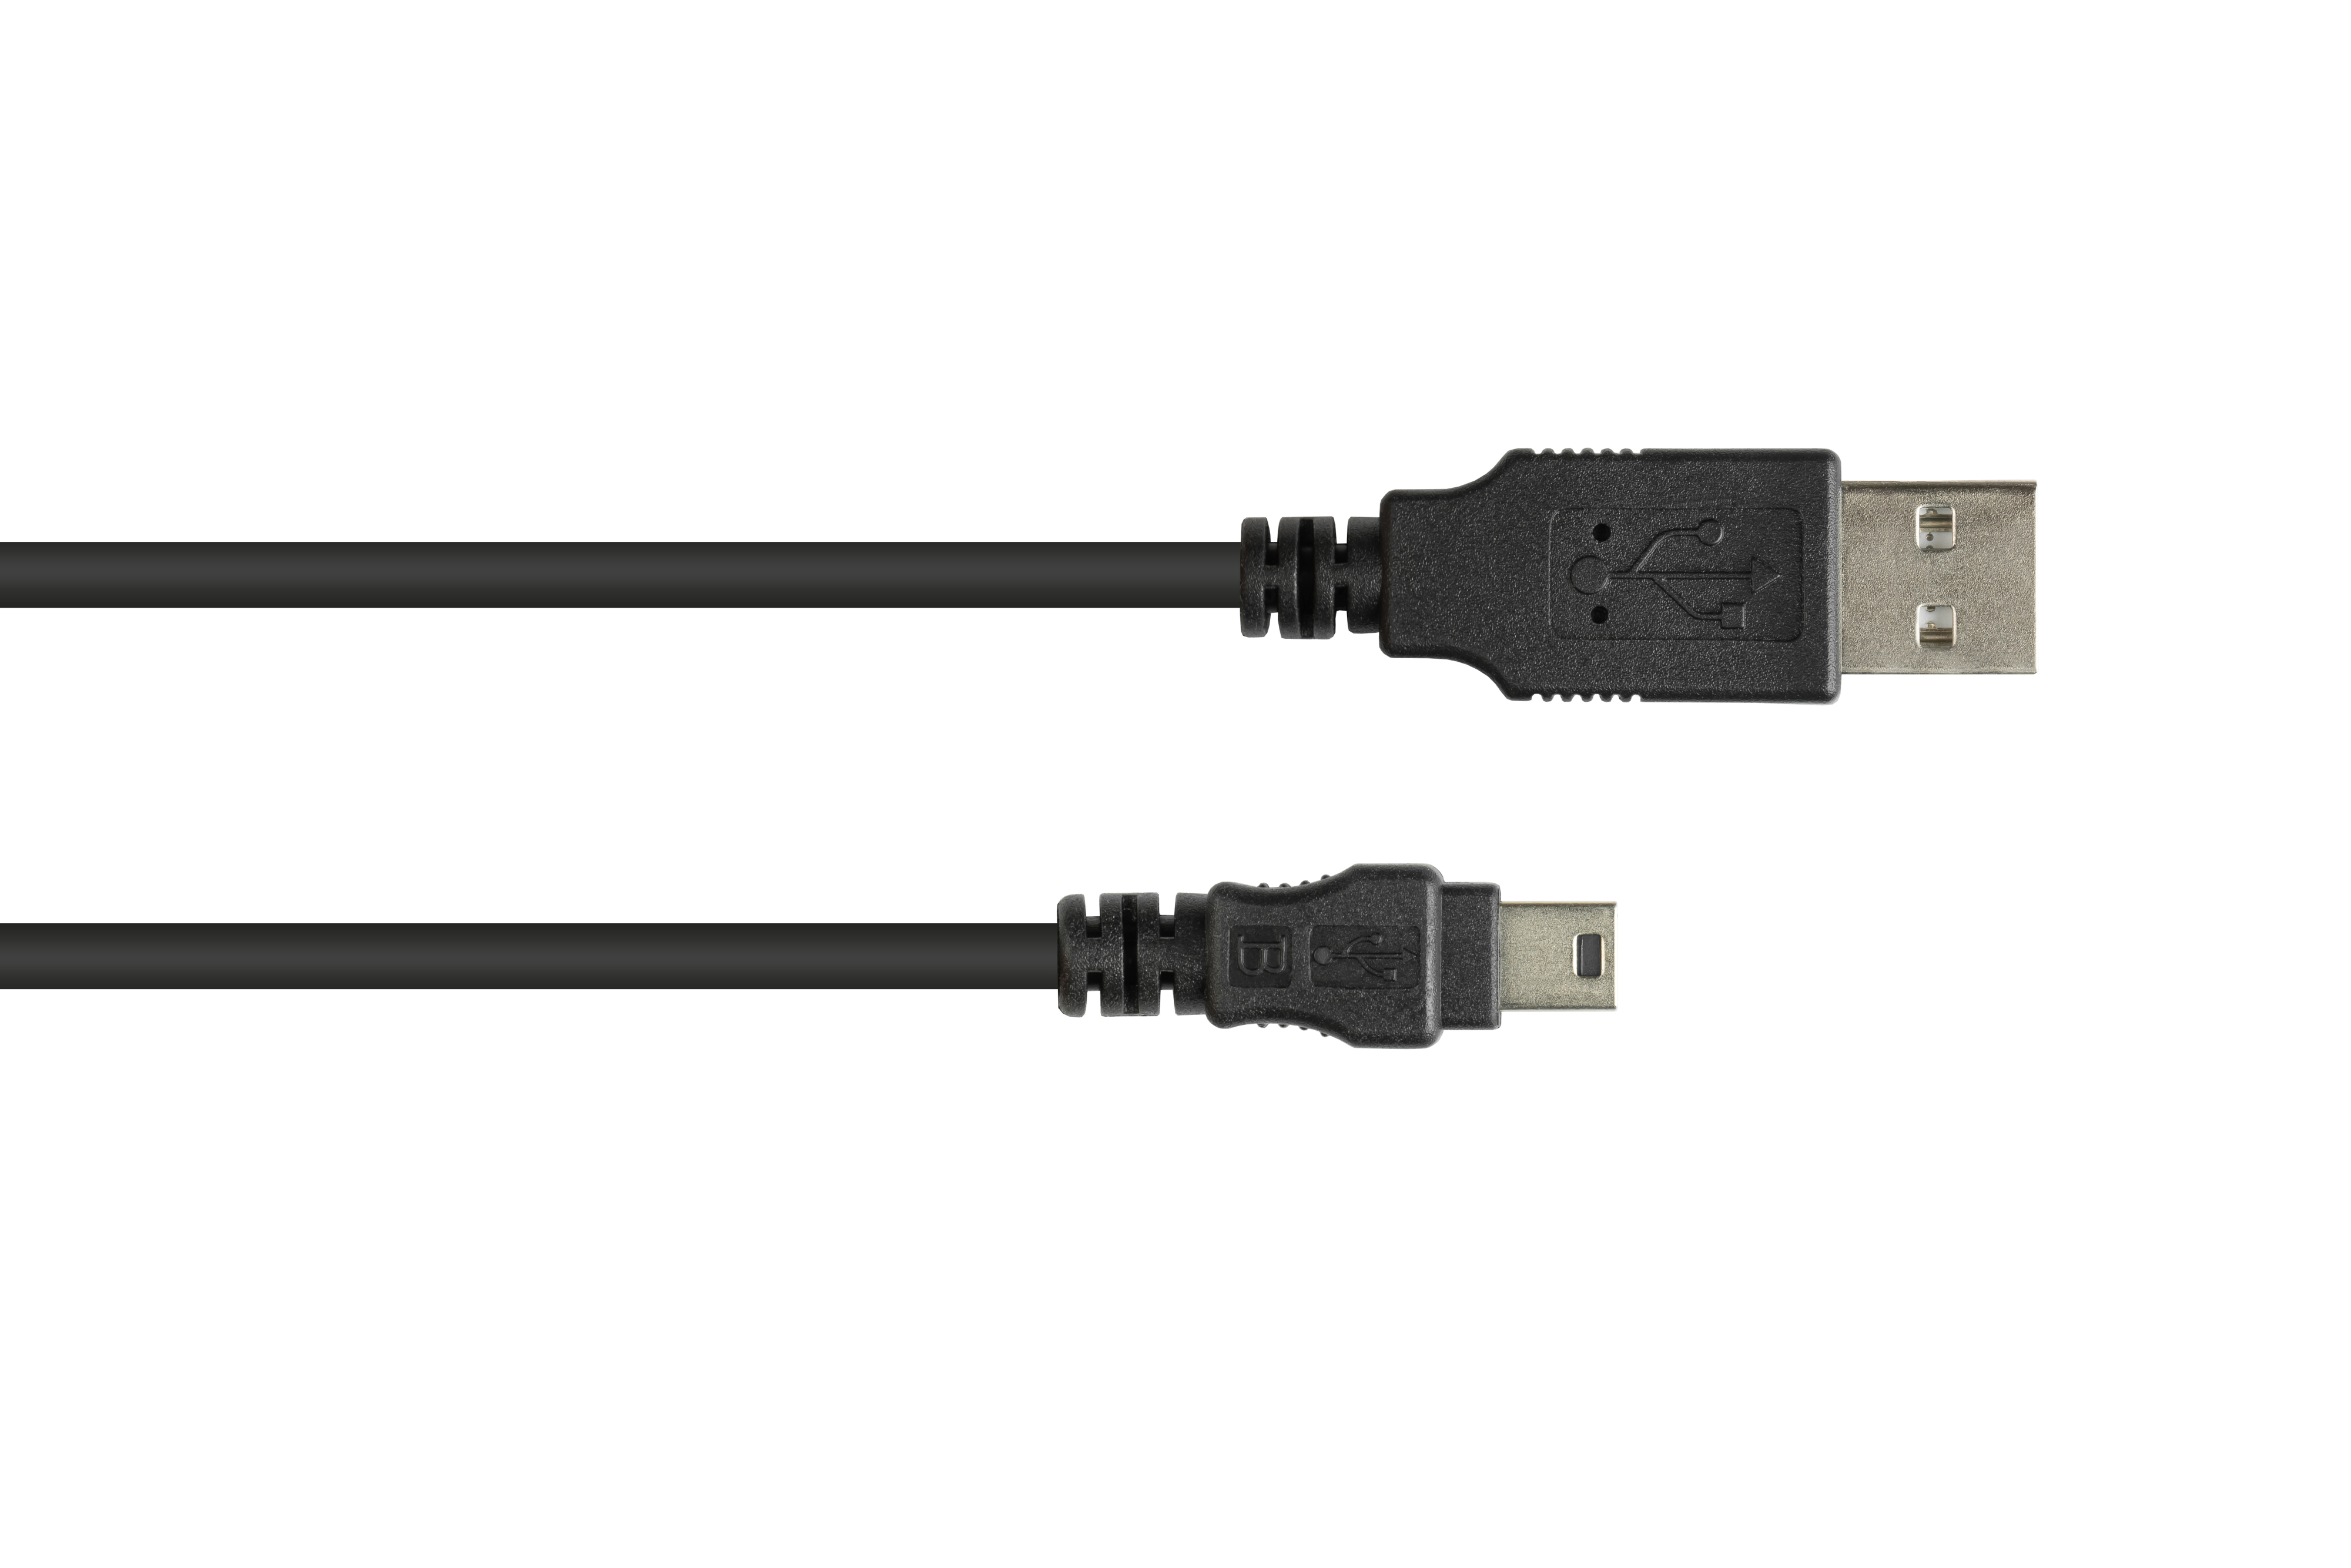 Stecker 5-pin, USB B Mini CONNECTIONS A schwarz Stecker 2.0 GOOD an Anschlusskabel